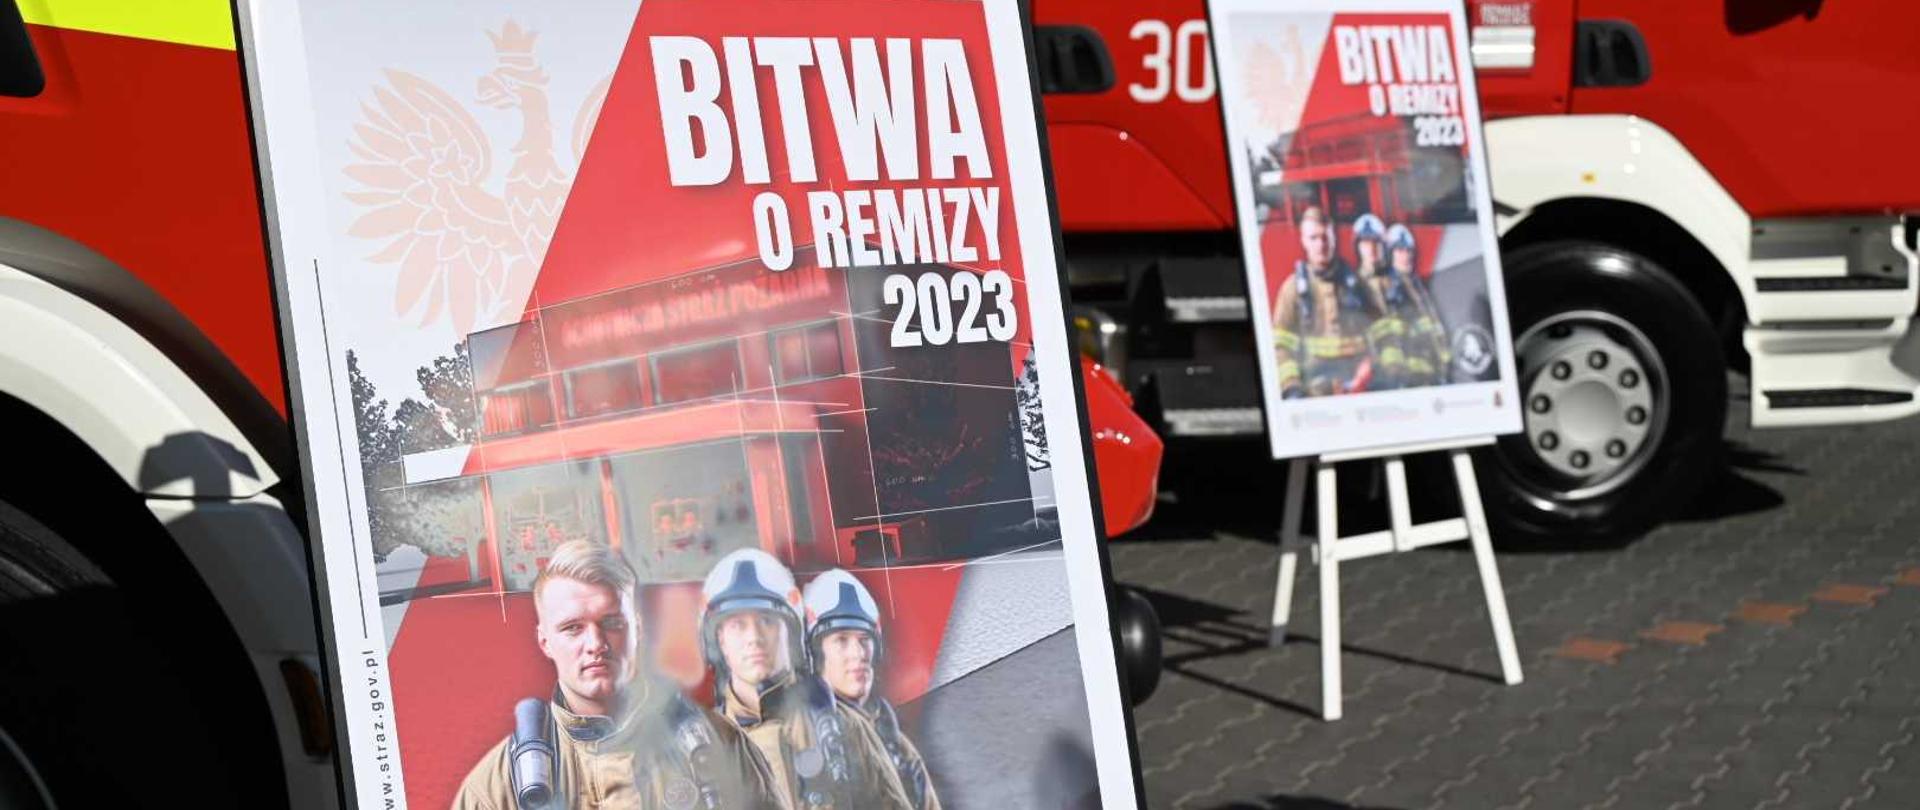 Dwa plakaty promocyjne akcji Bitwa o remizy 2023 na tle dwóch samochodów pożarniczych.